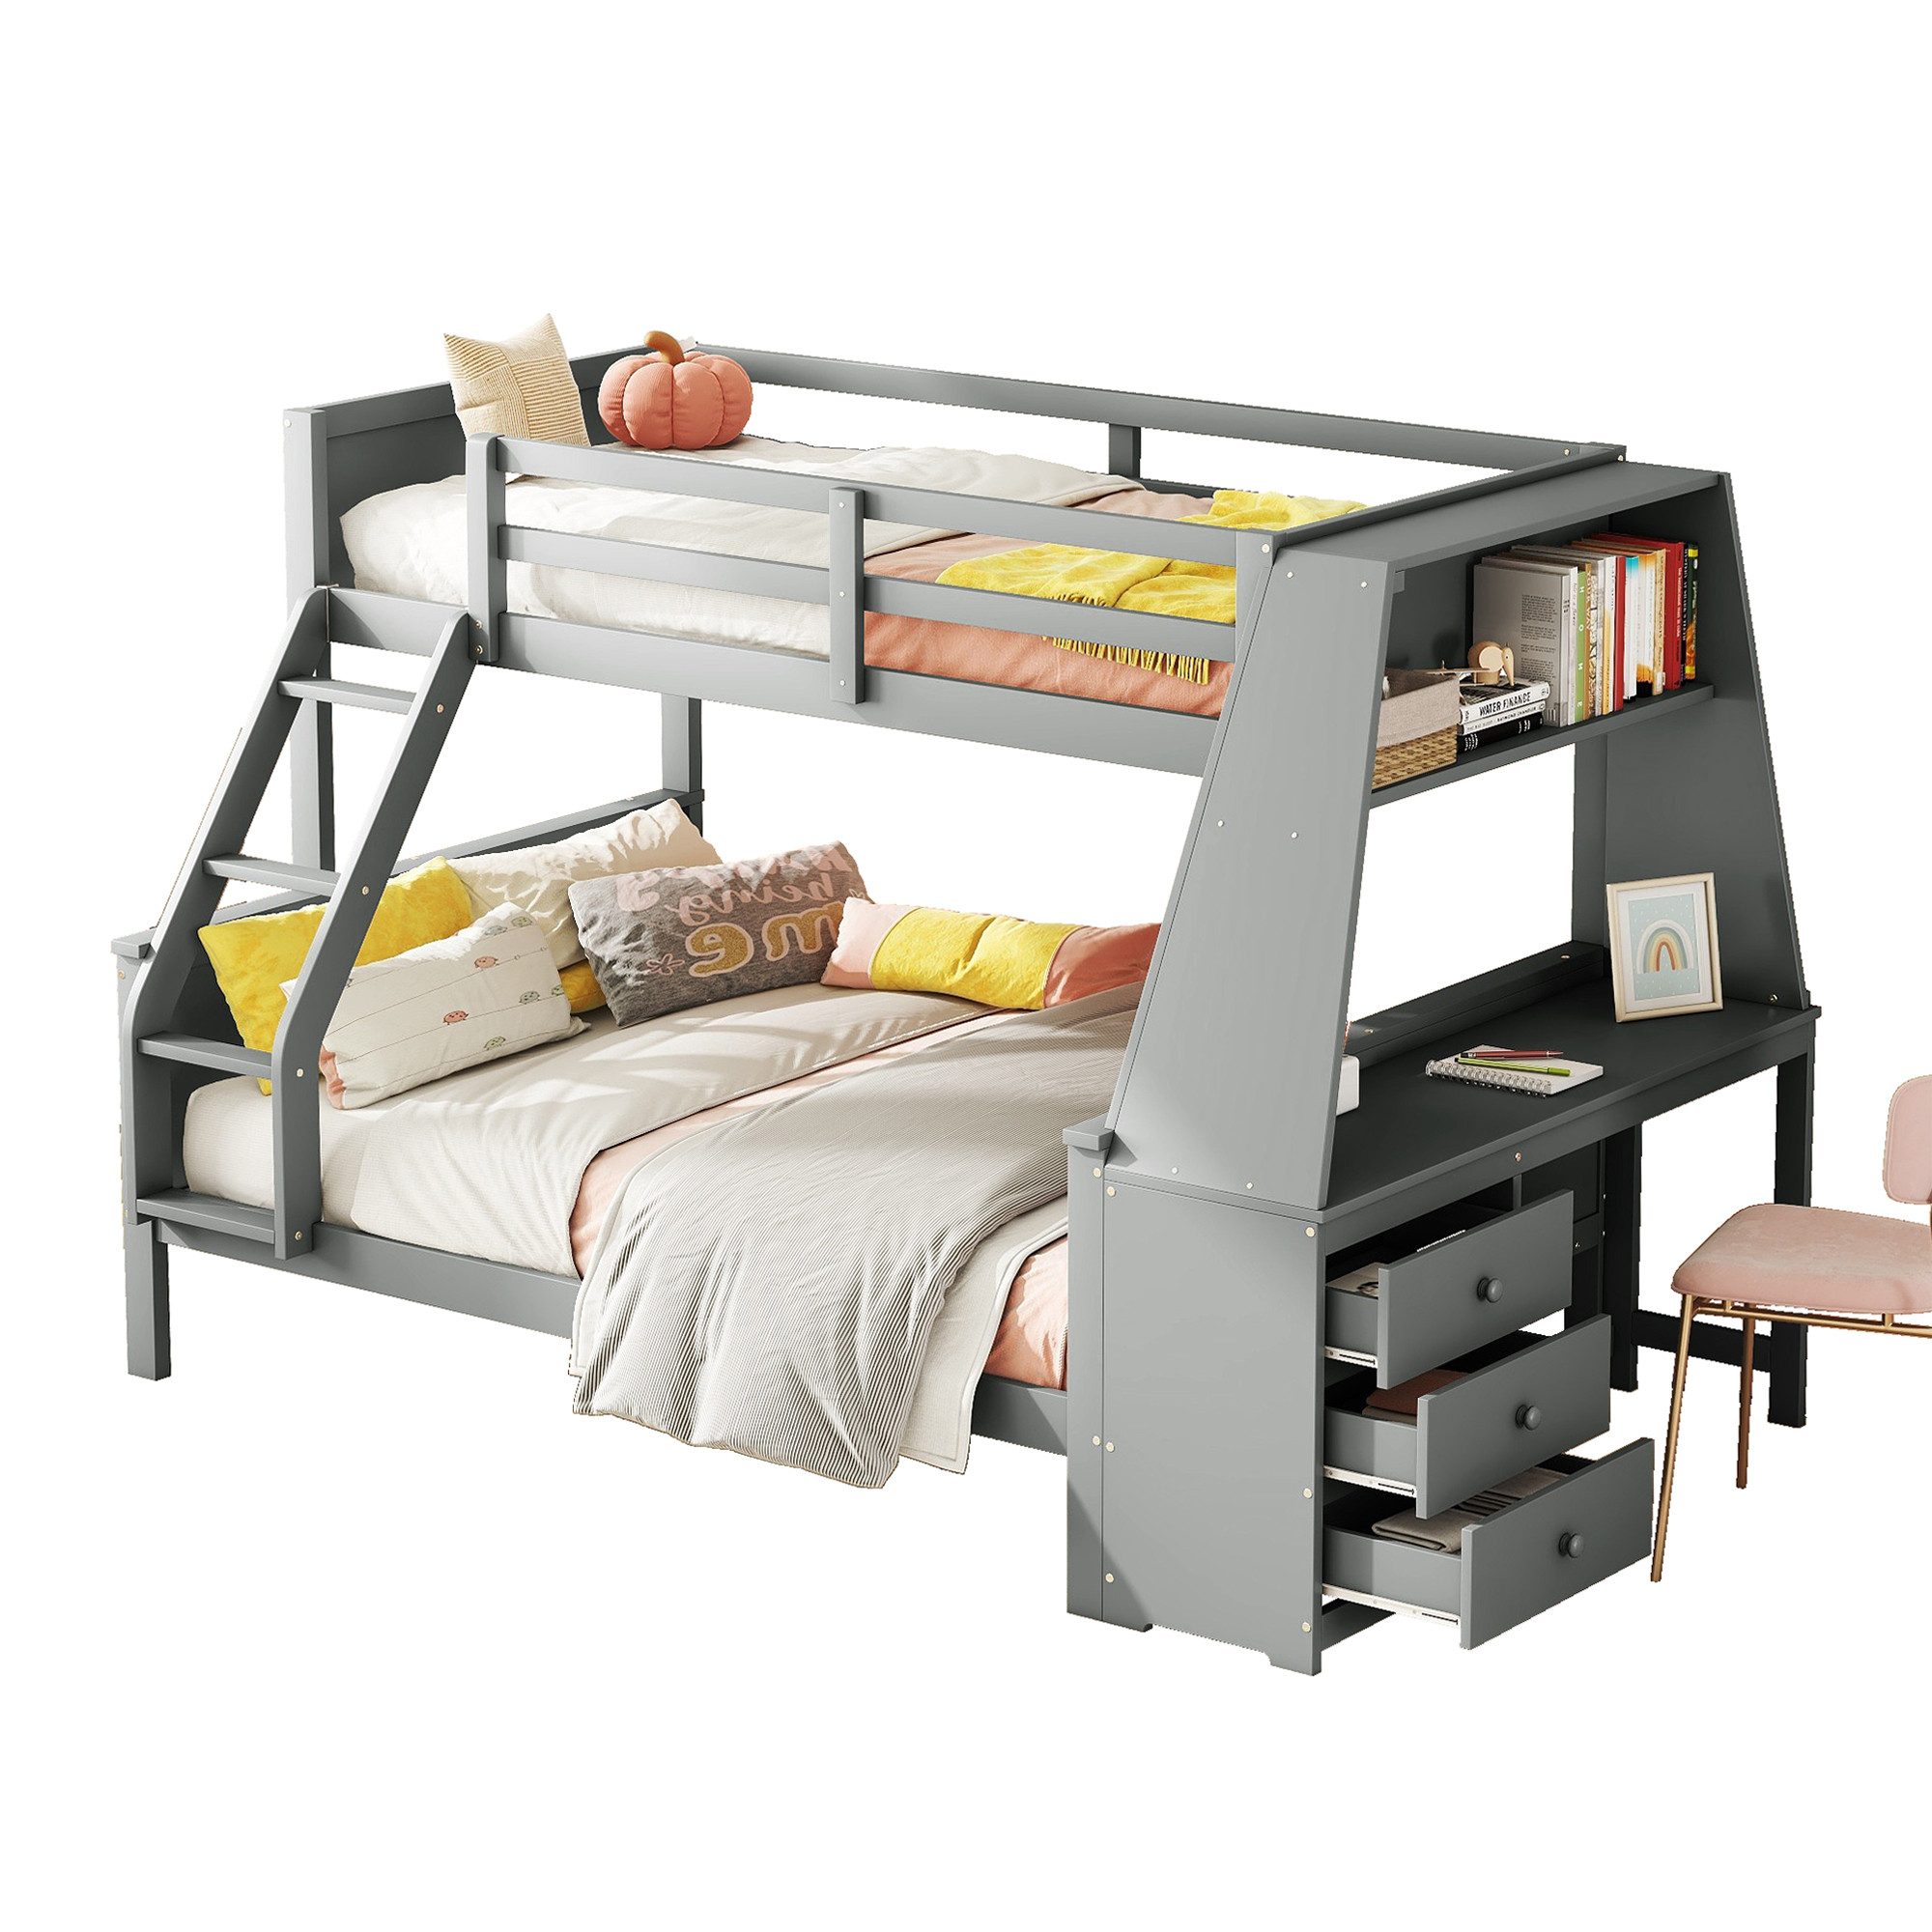 PFCTART Etagenbett Kinderbett, ausgestattet mit Tisch, Hochbett, Multifunktionales Bett